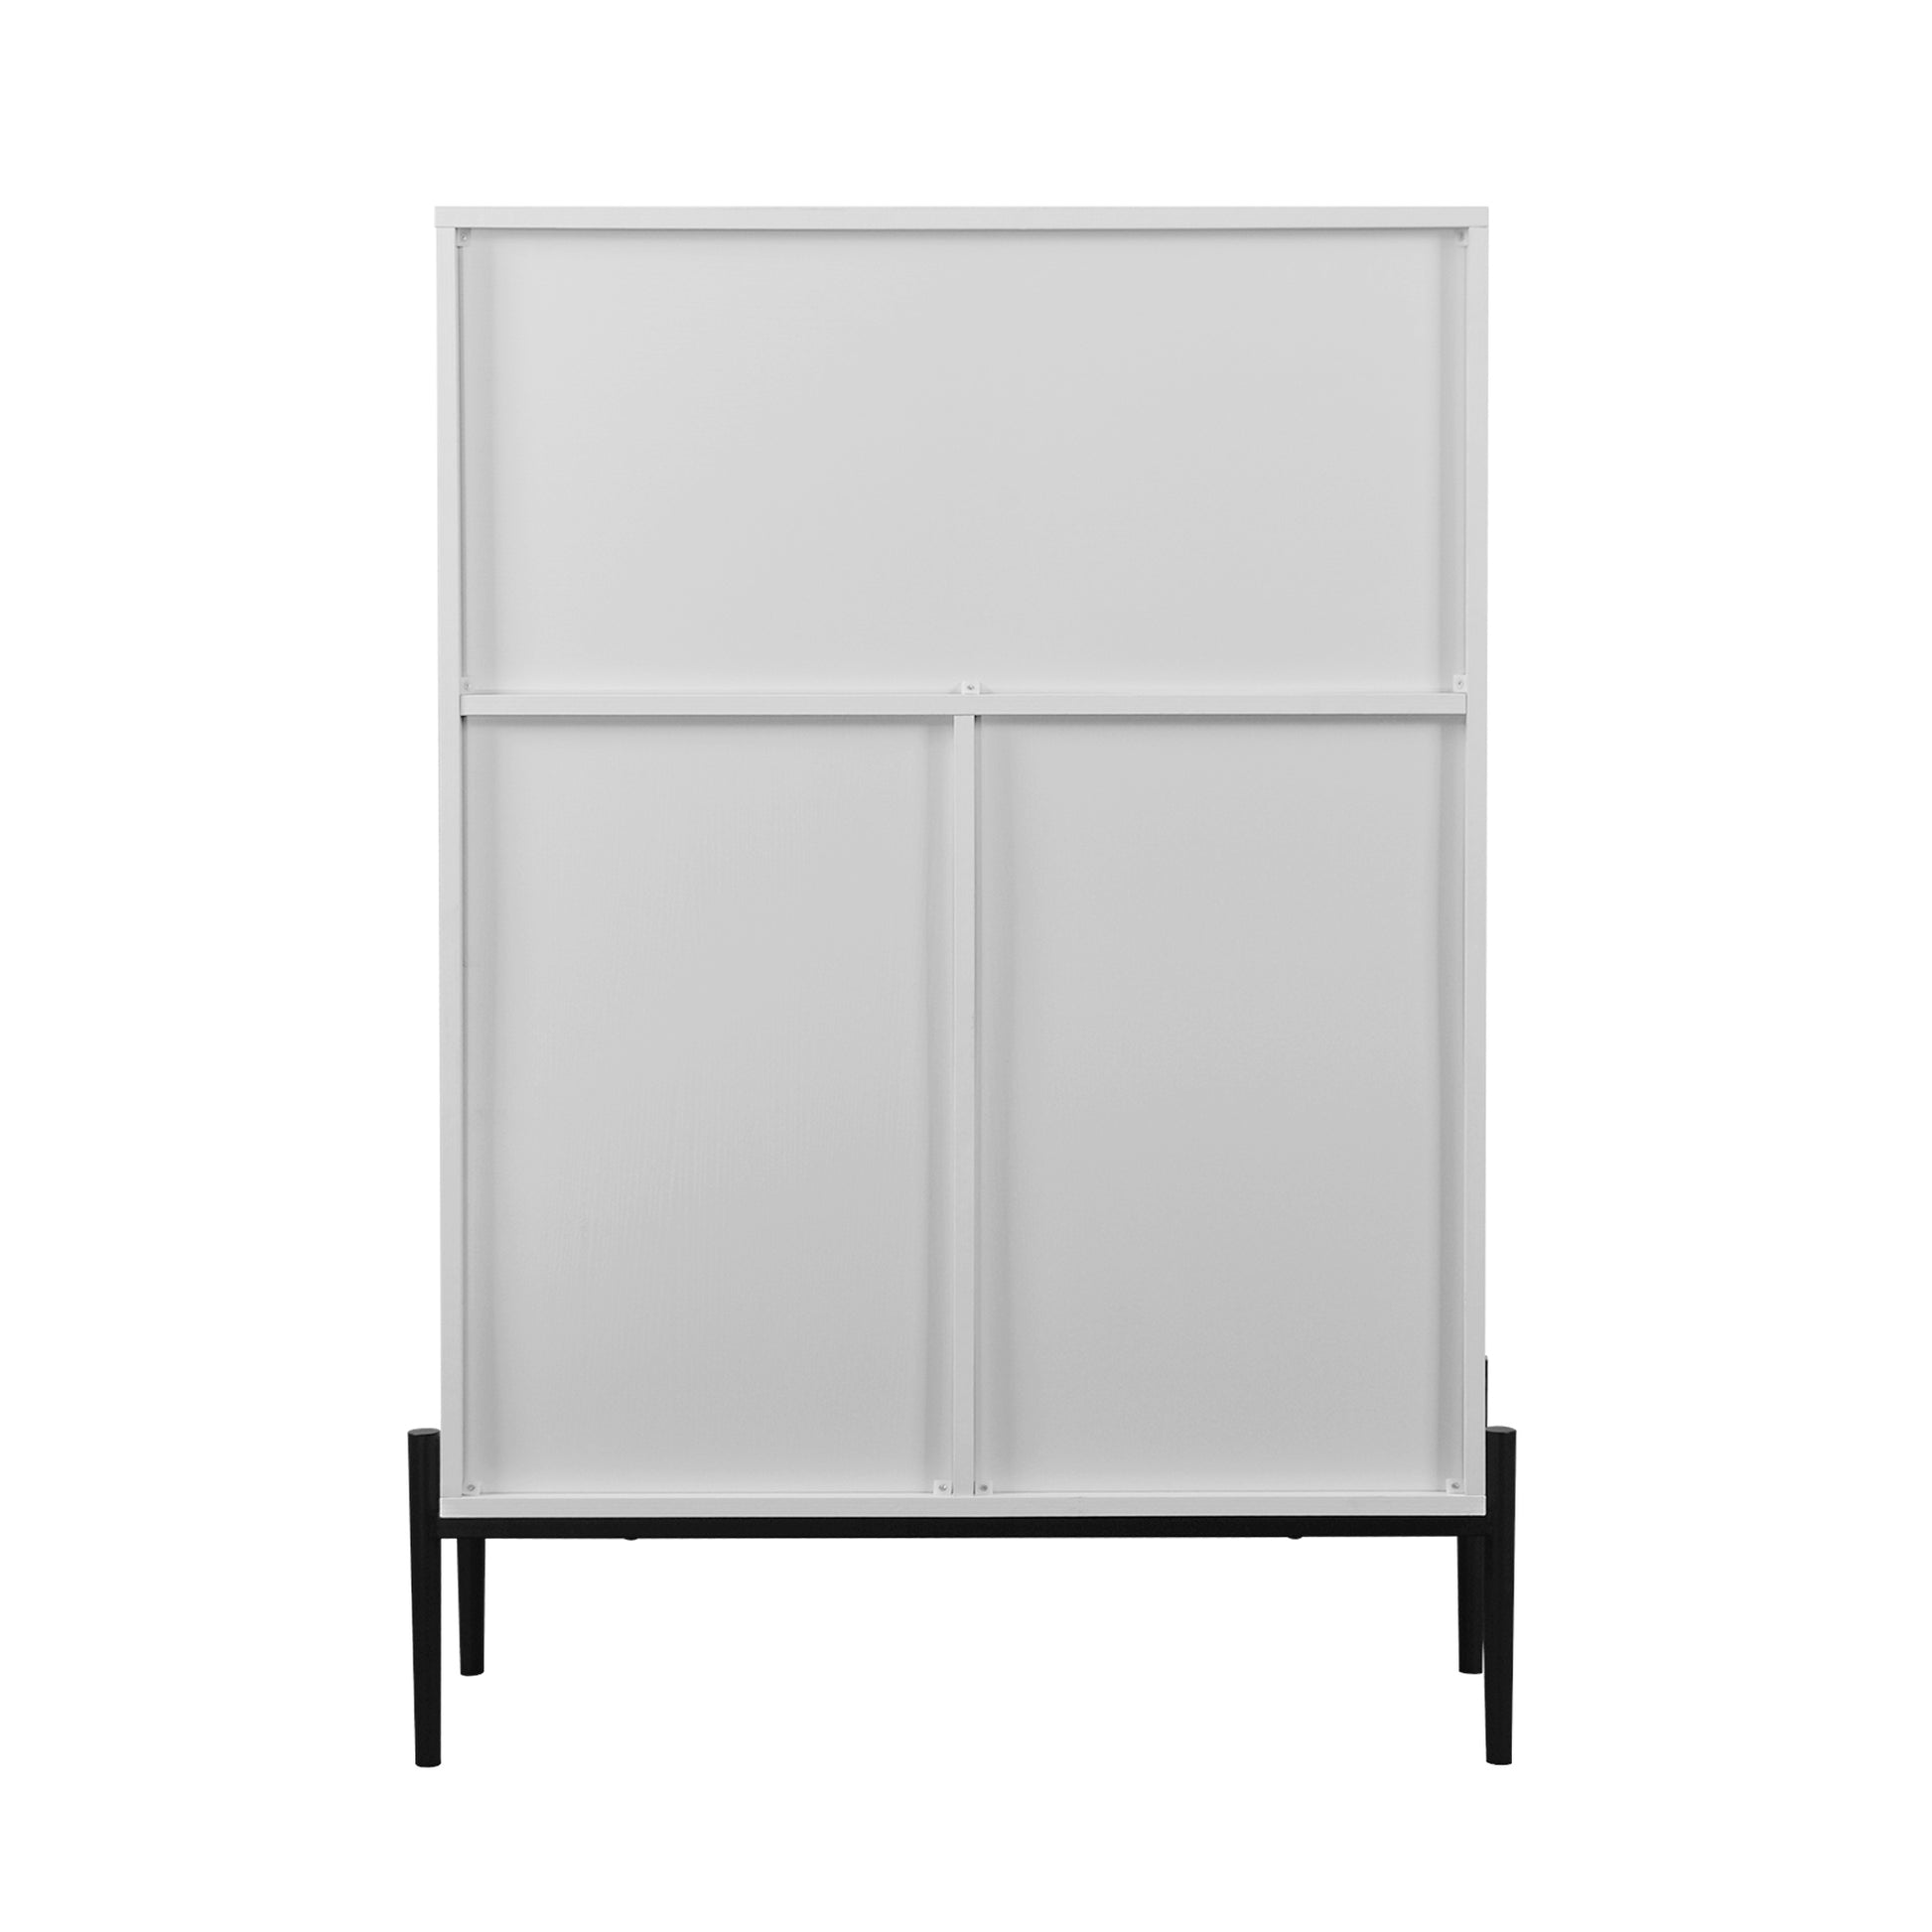 Sideboard With 3 Drawers ,1 Door And 1 Glass Door